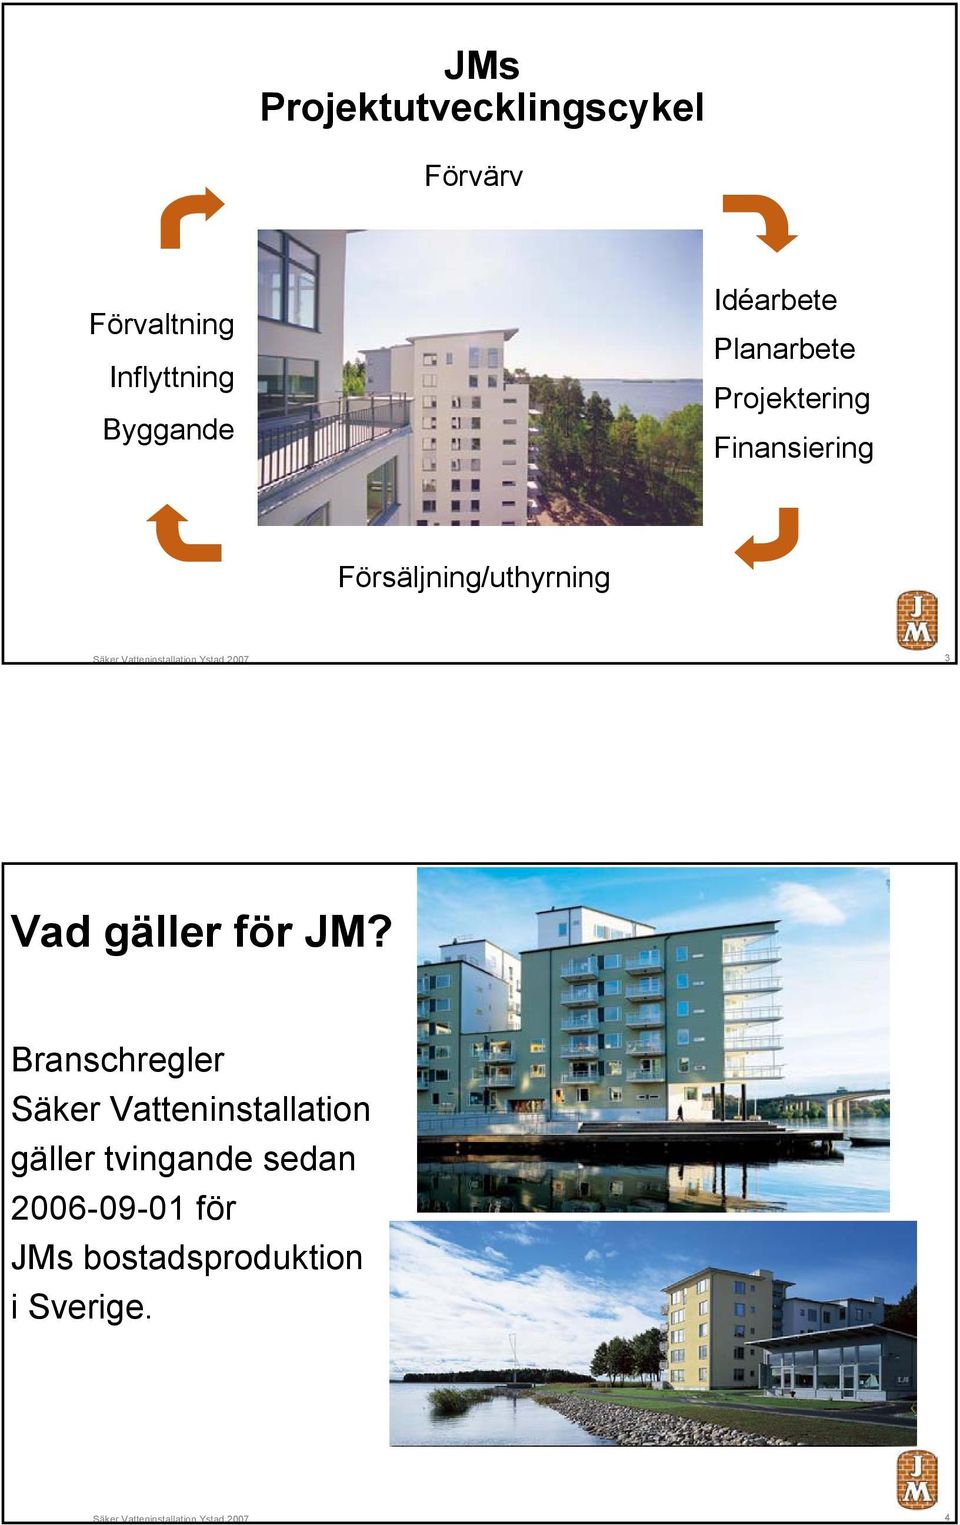 Försäljning/uthyrning Ystad 2007 3 Vad gäller för JM?